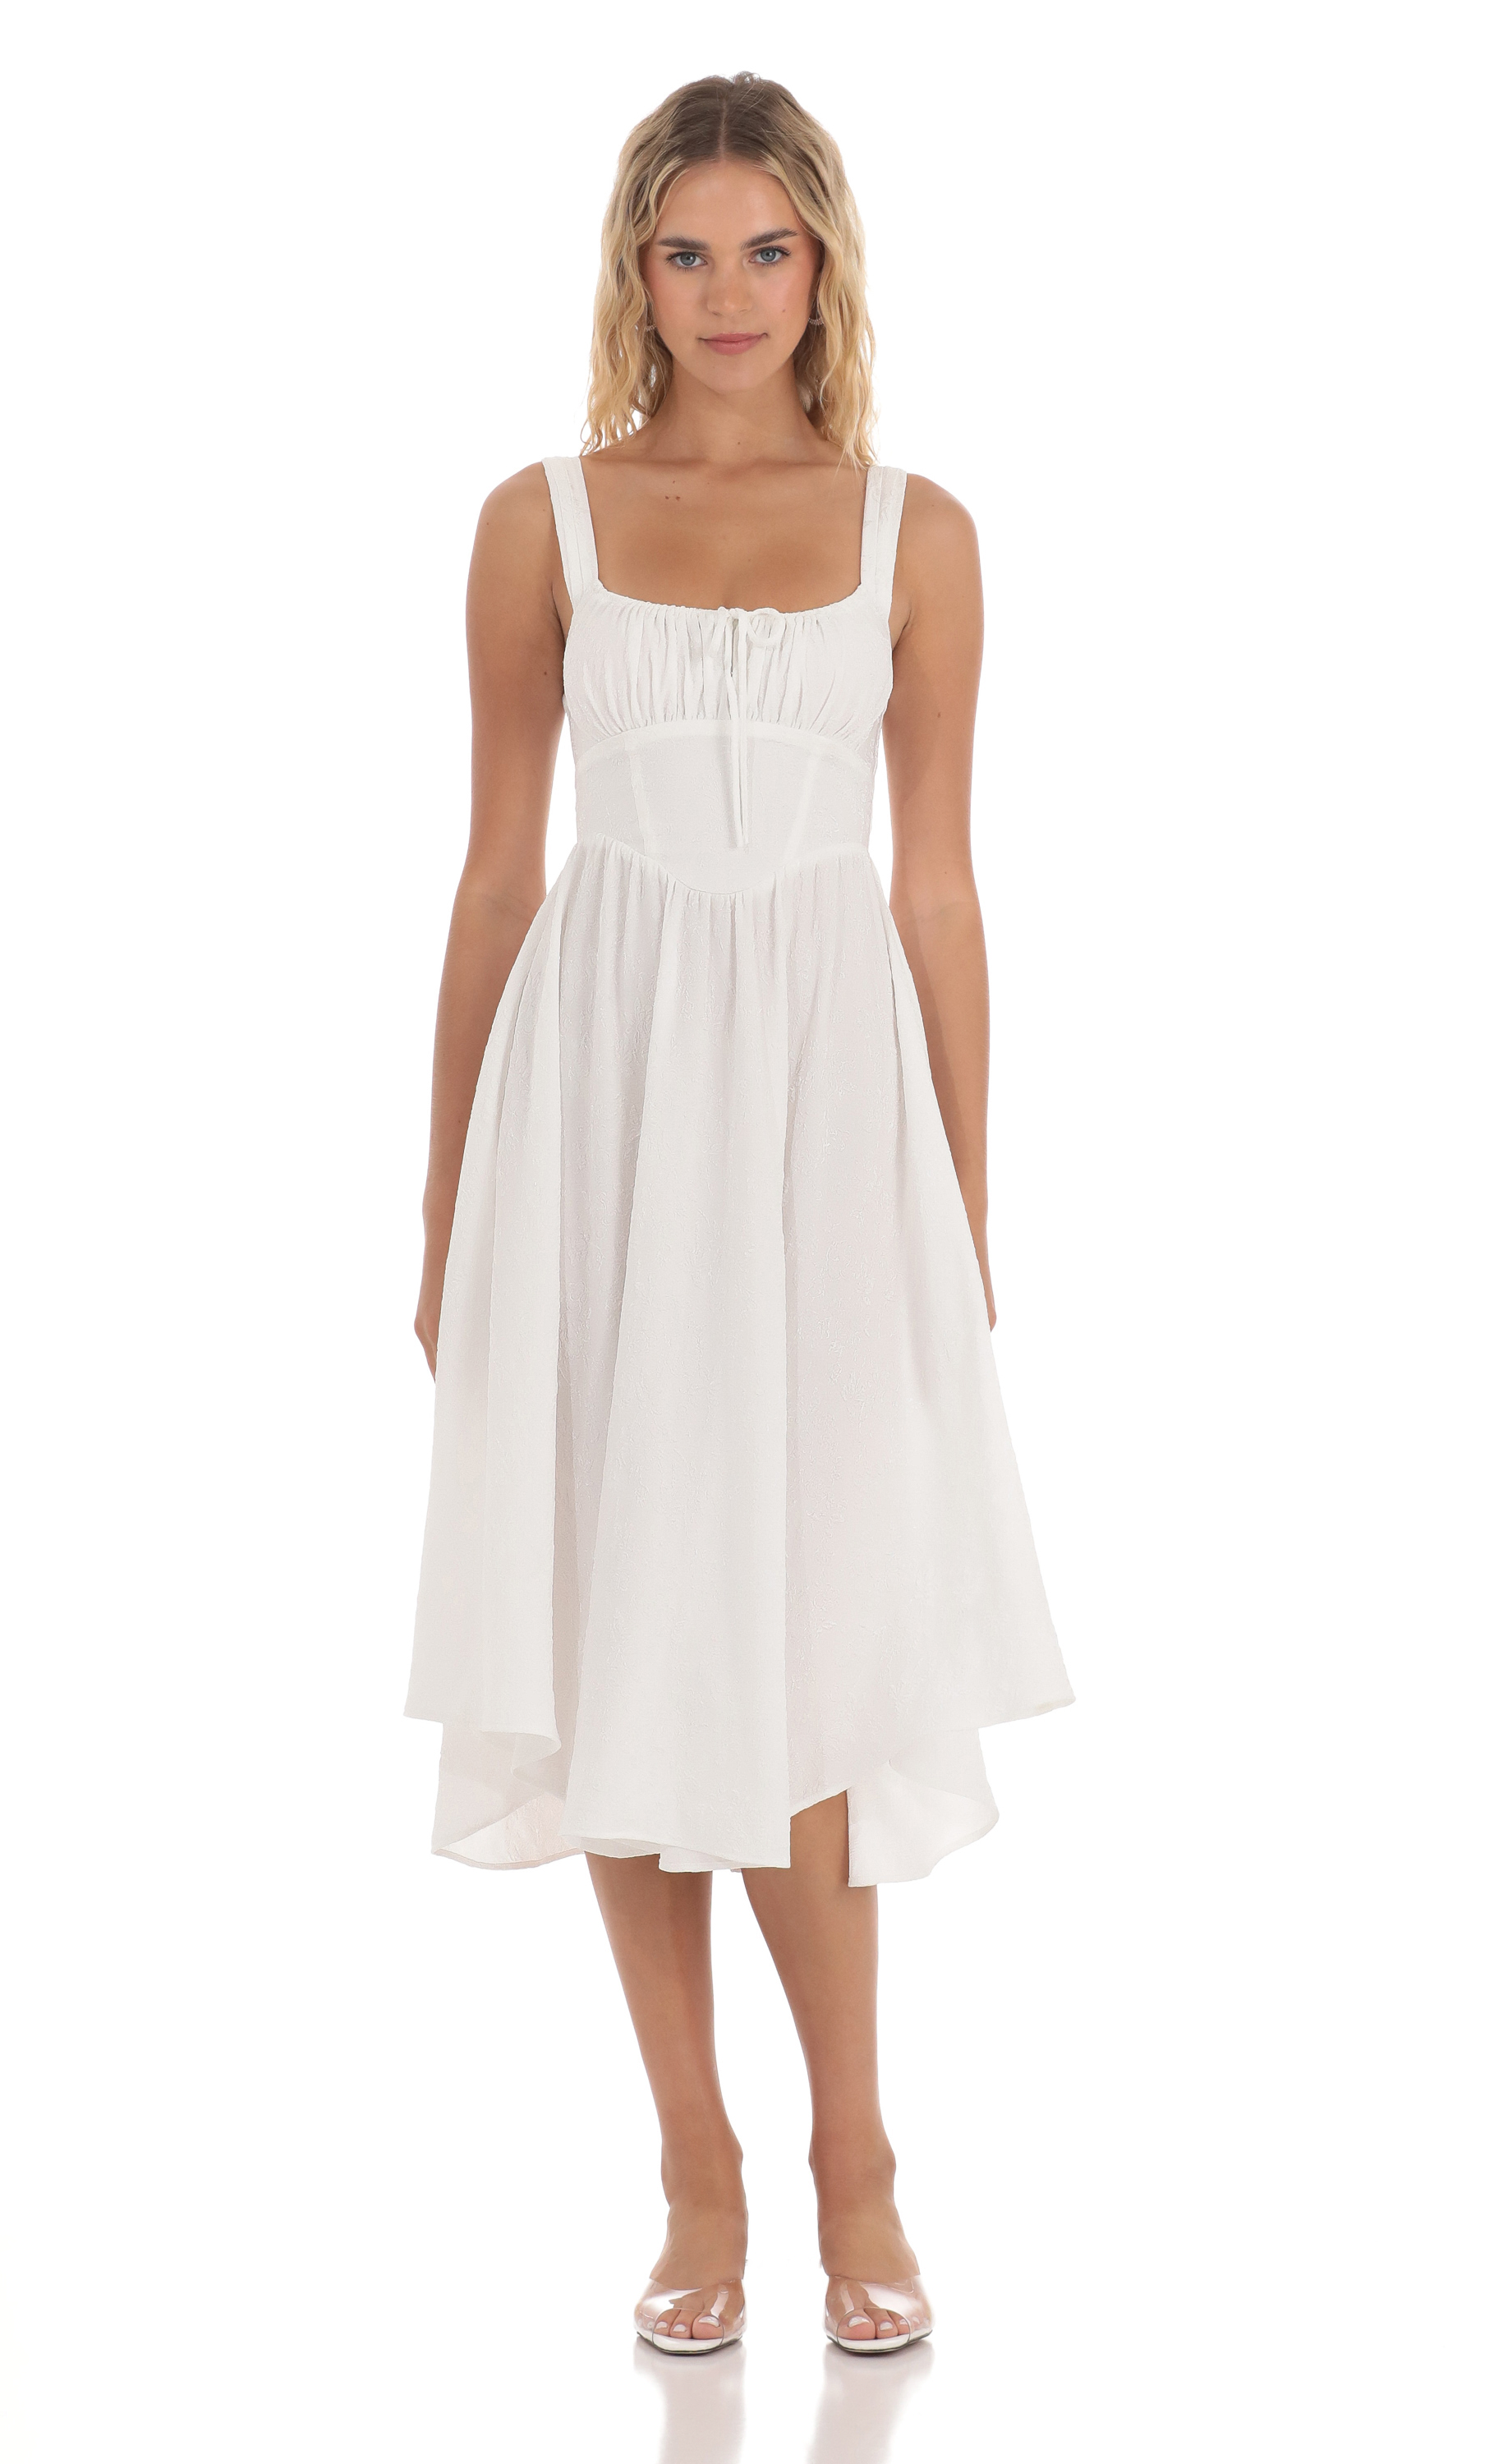 Jacquard Flare Midi Dress in White